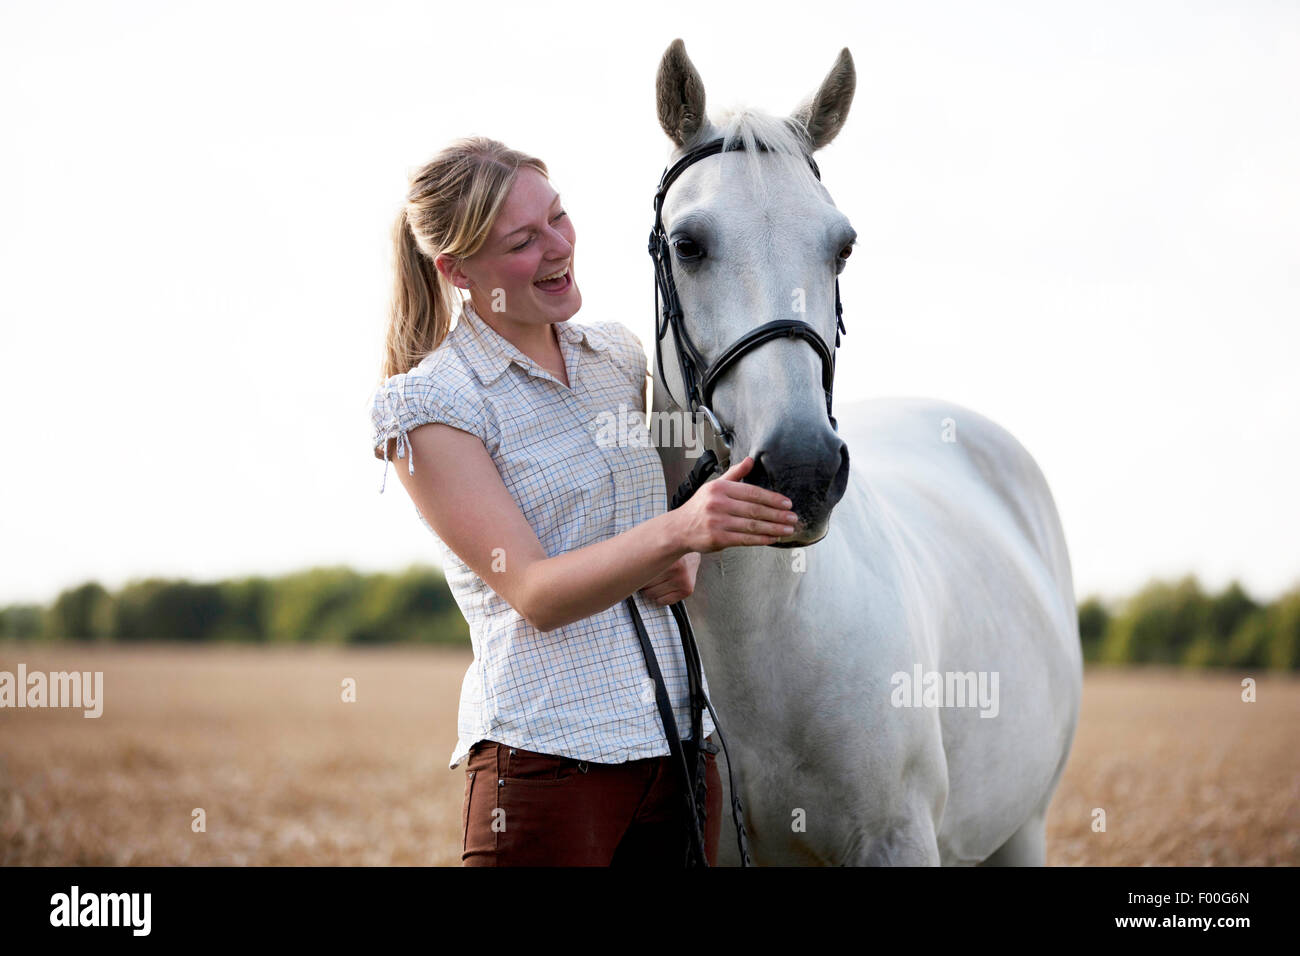 Eine junge Frau in einem Weizenfeld mit einem Pferd stehend, lachen Stockfoto